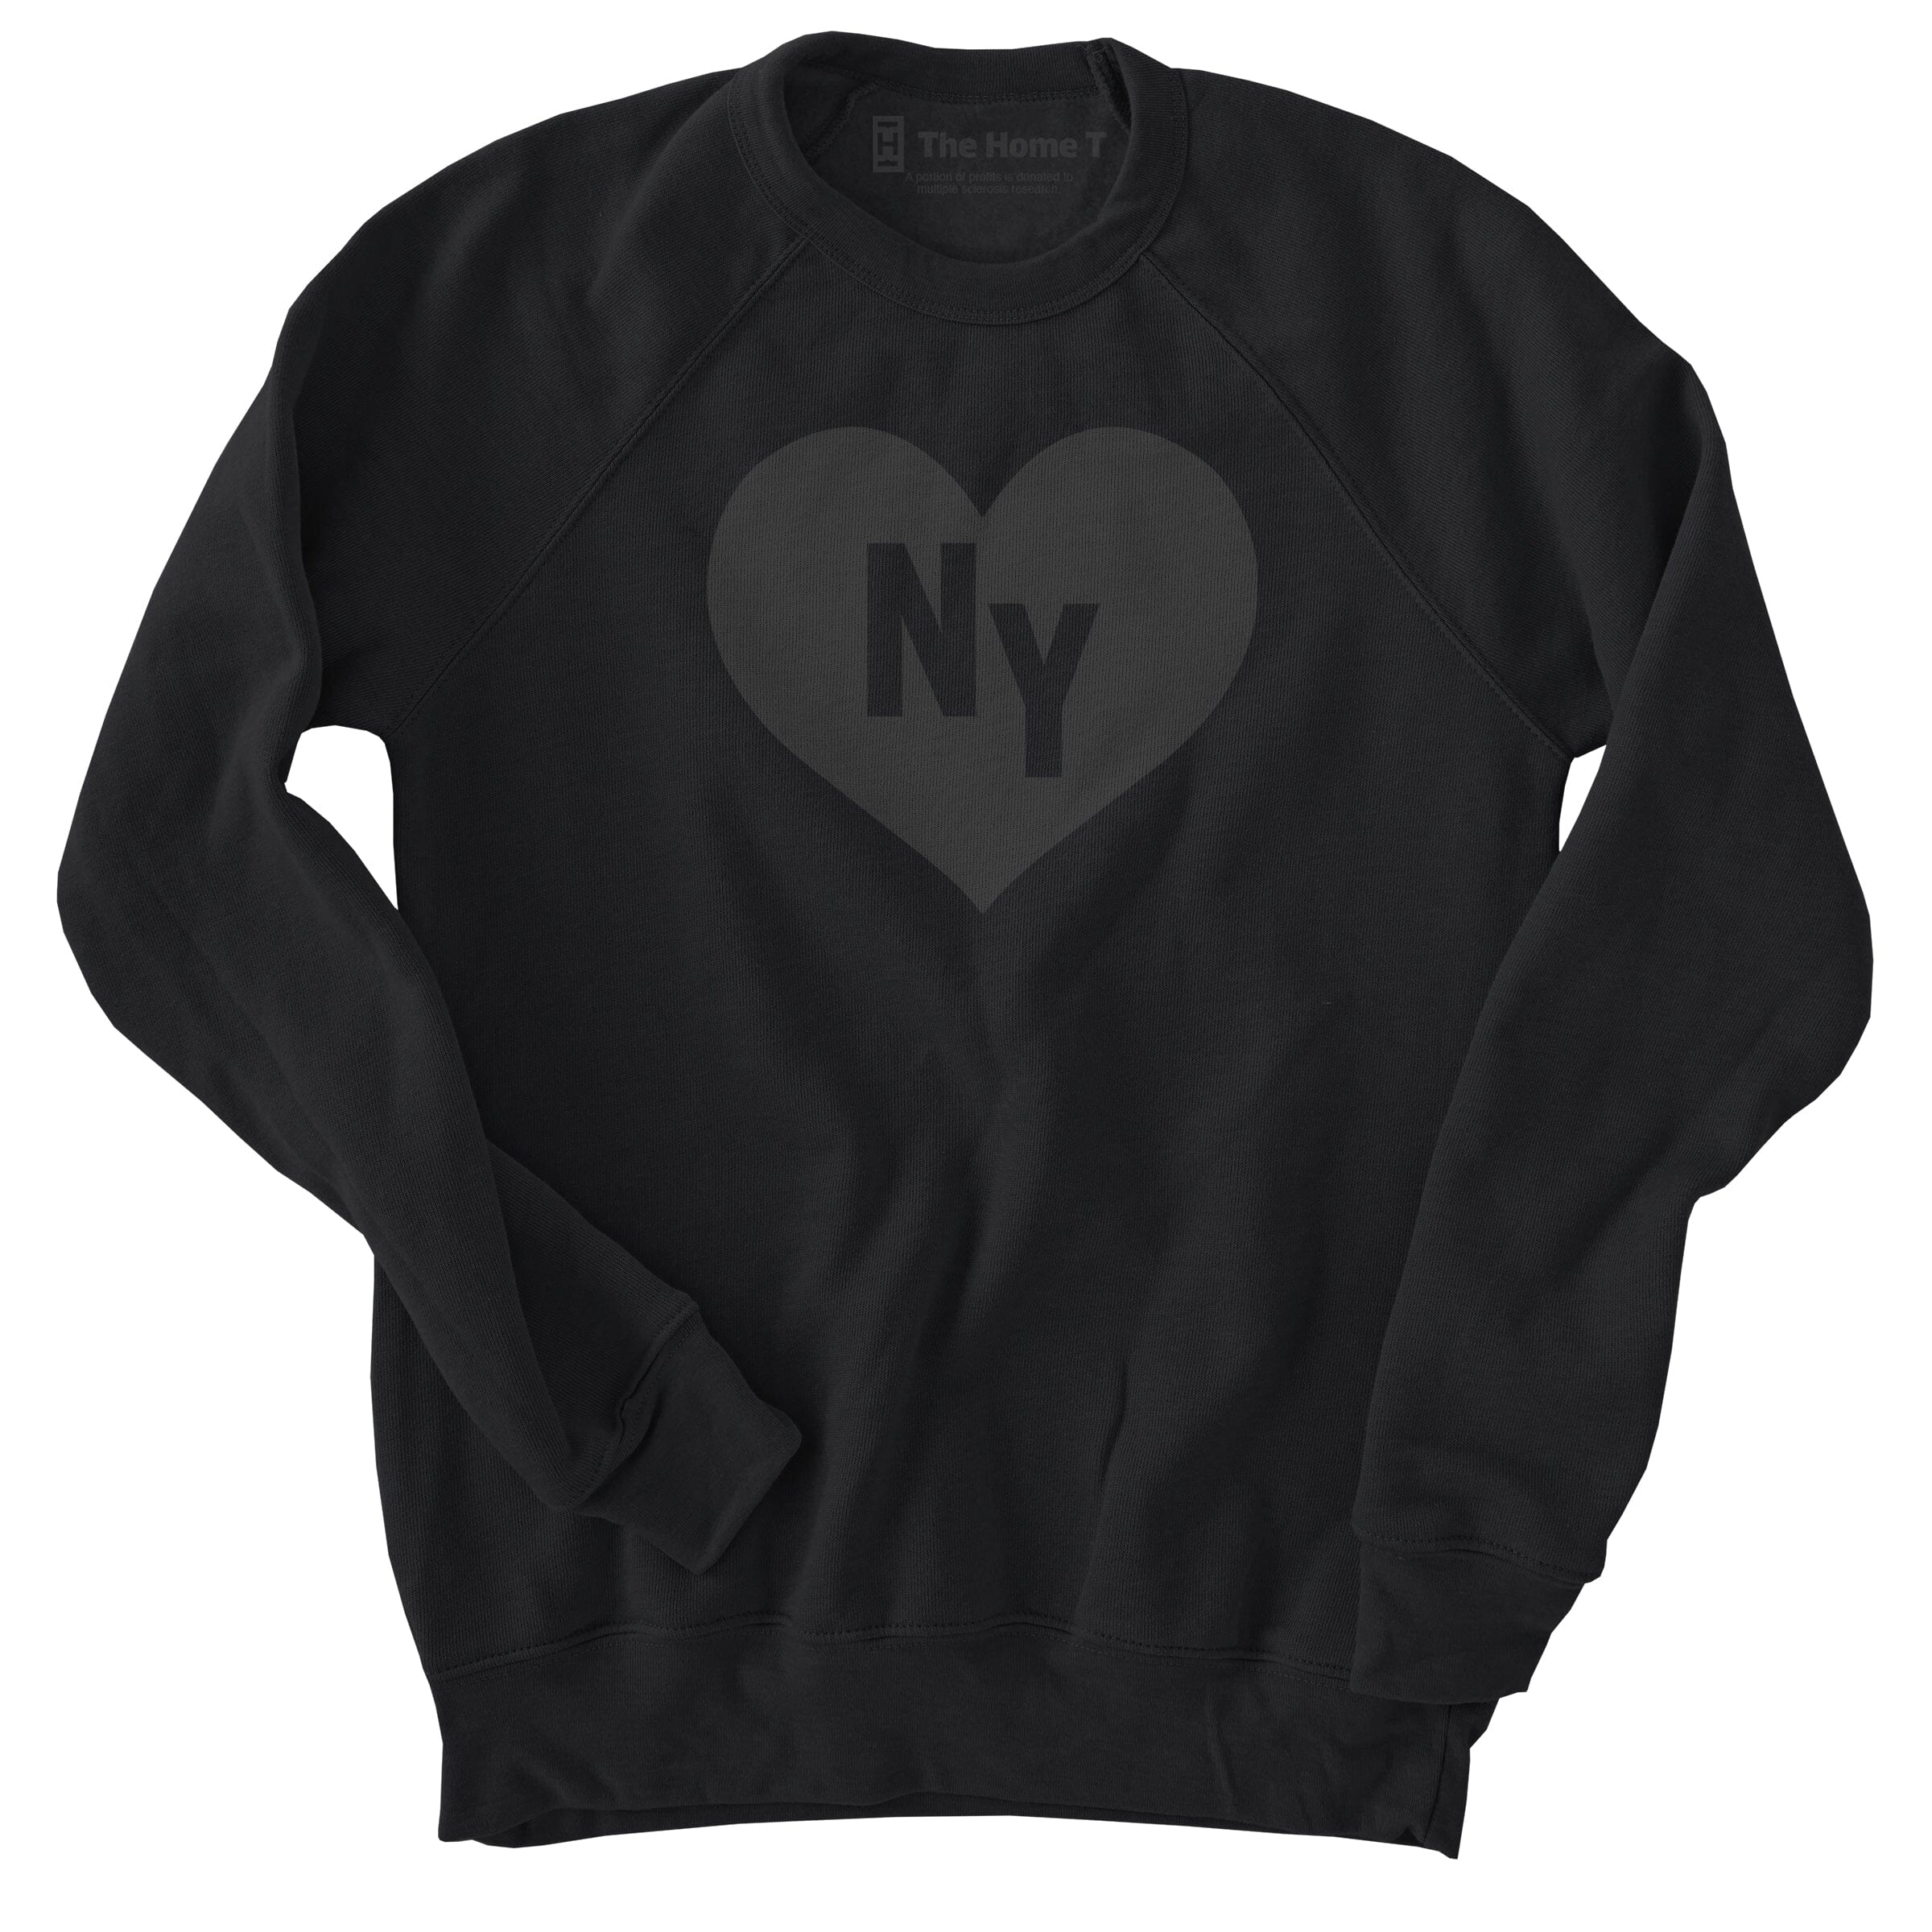 New York Black on Black Heart